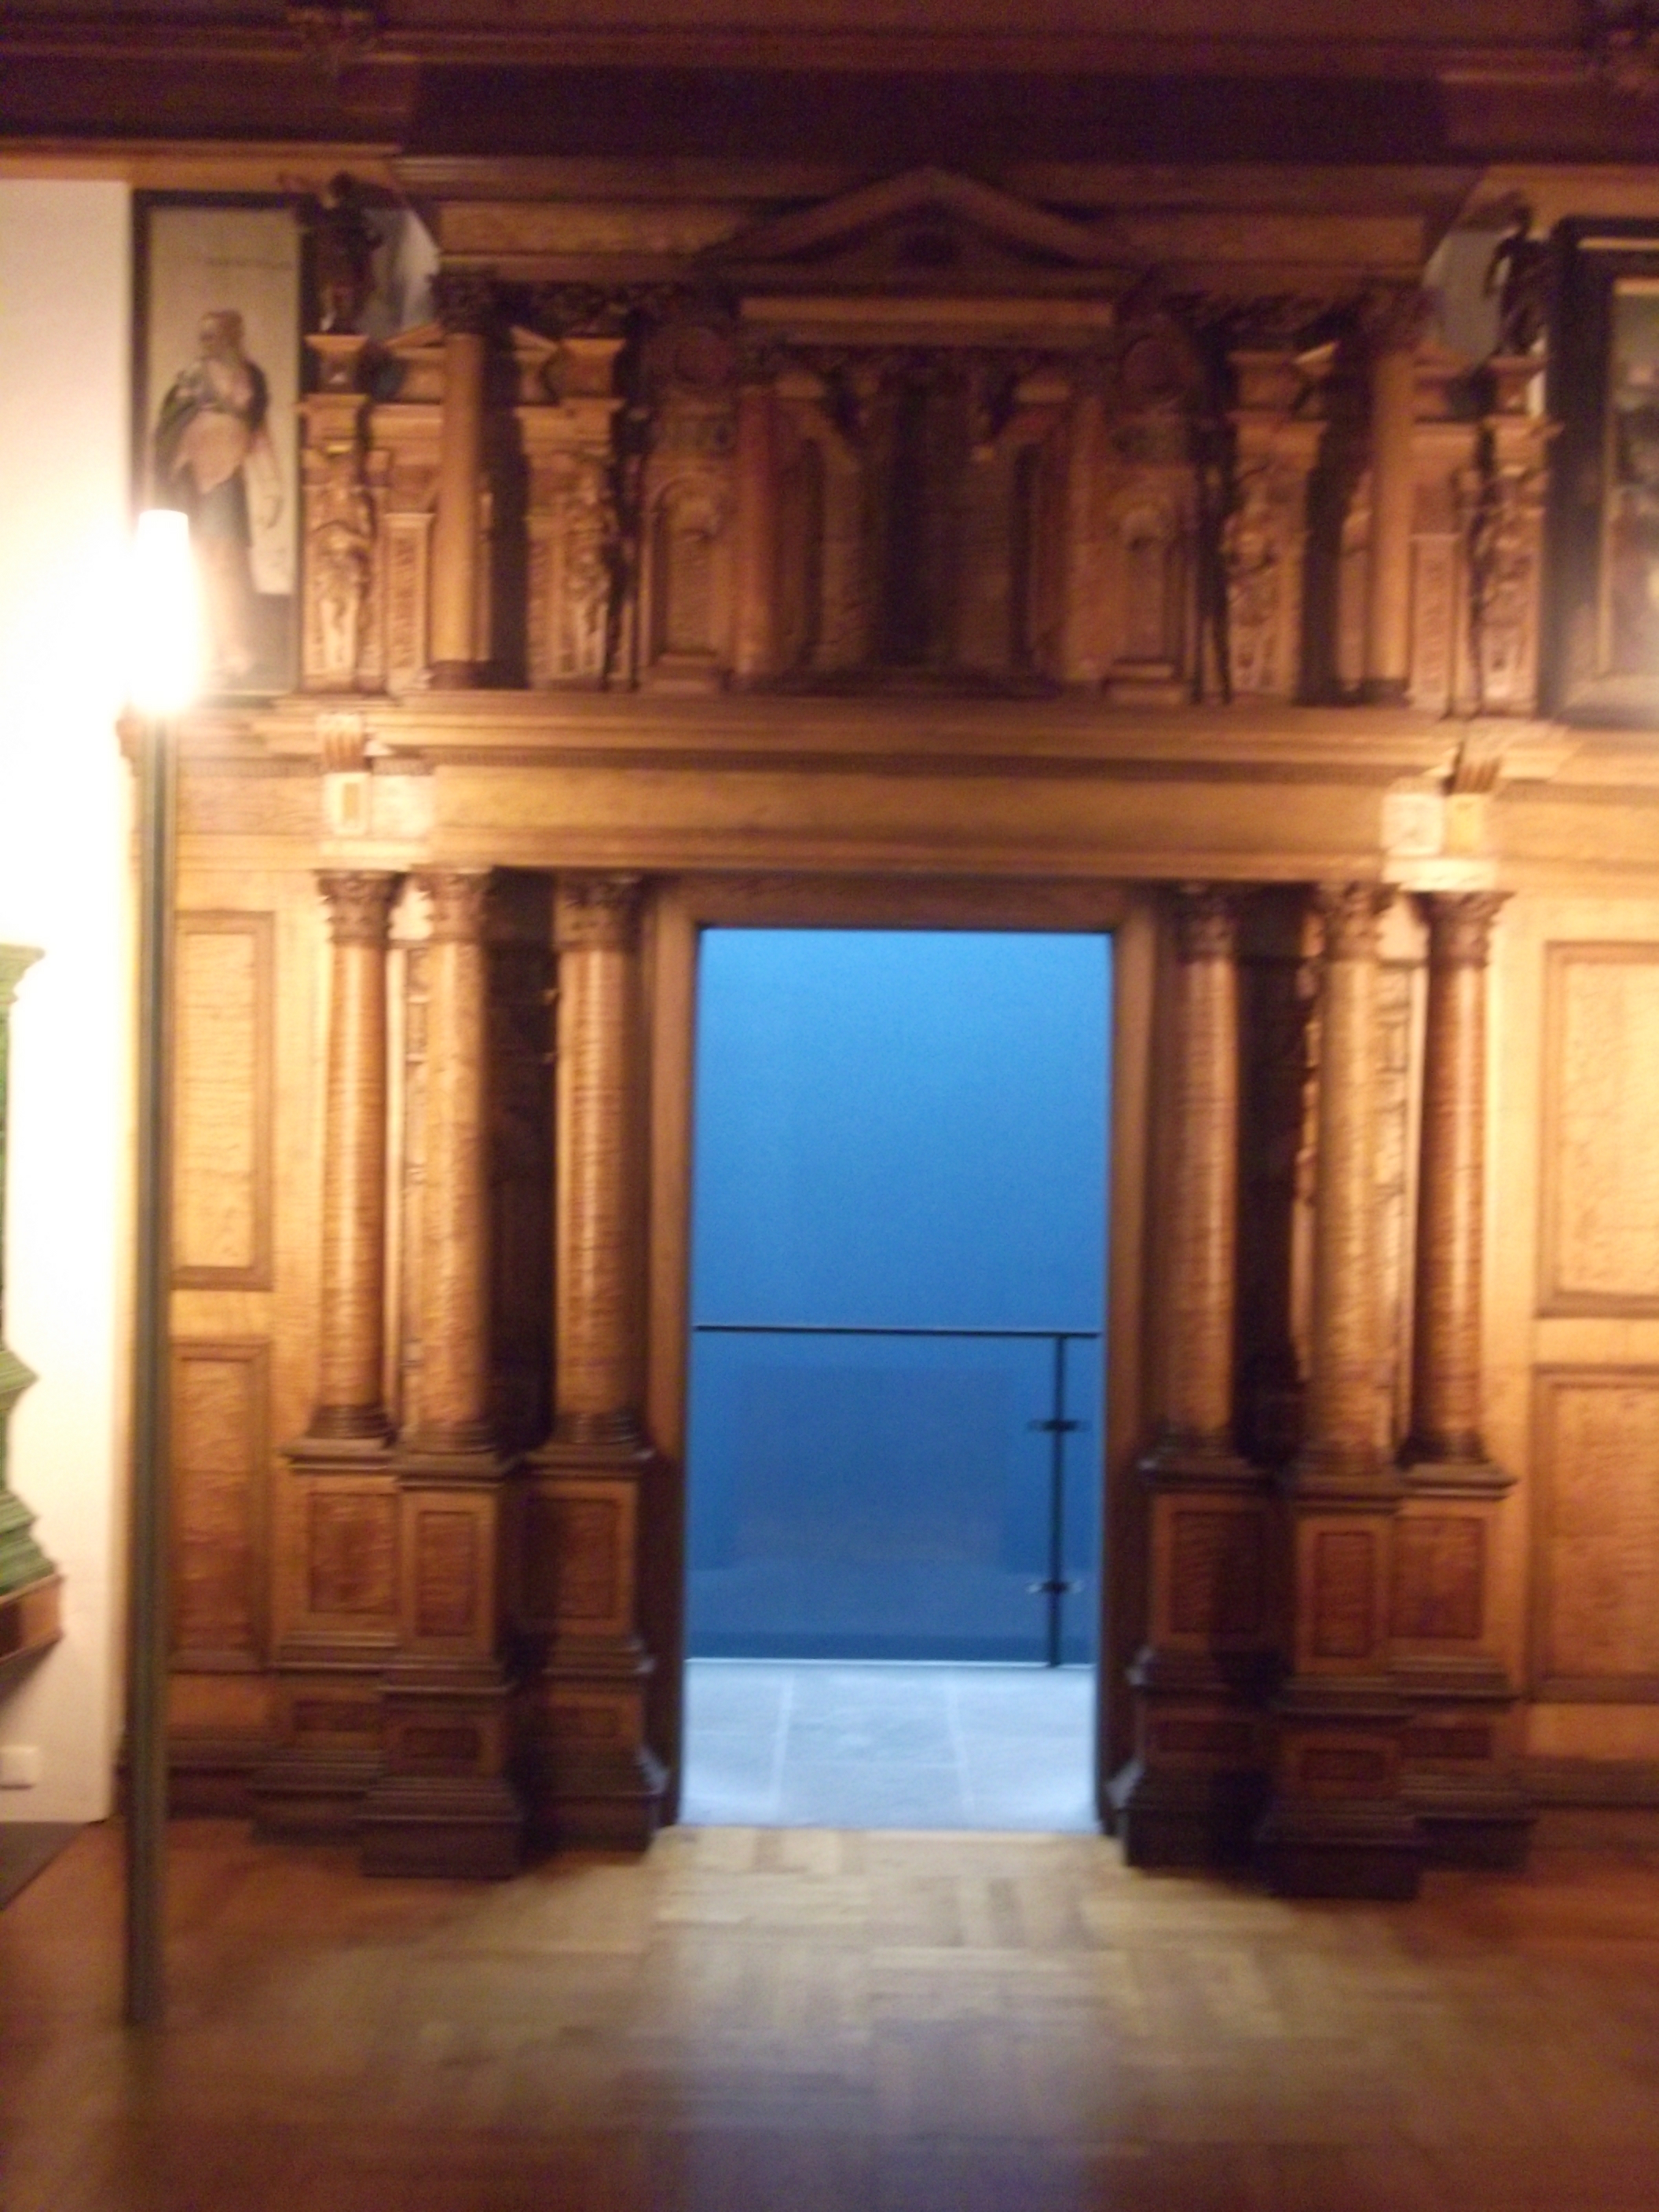 Renaissanceportal - toller Blickfang, der in einem repr&auml;sentativem Patrizierhaus vorzufinden war